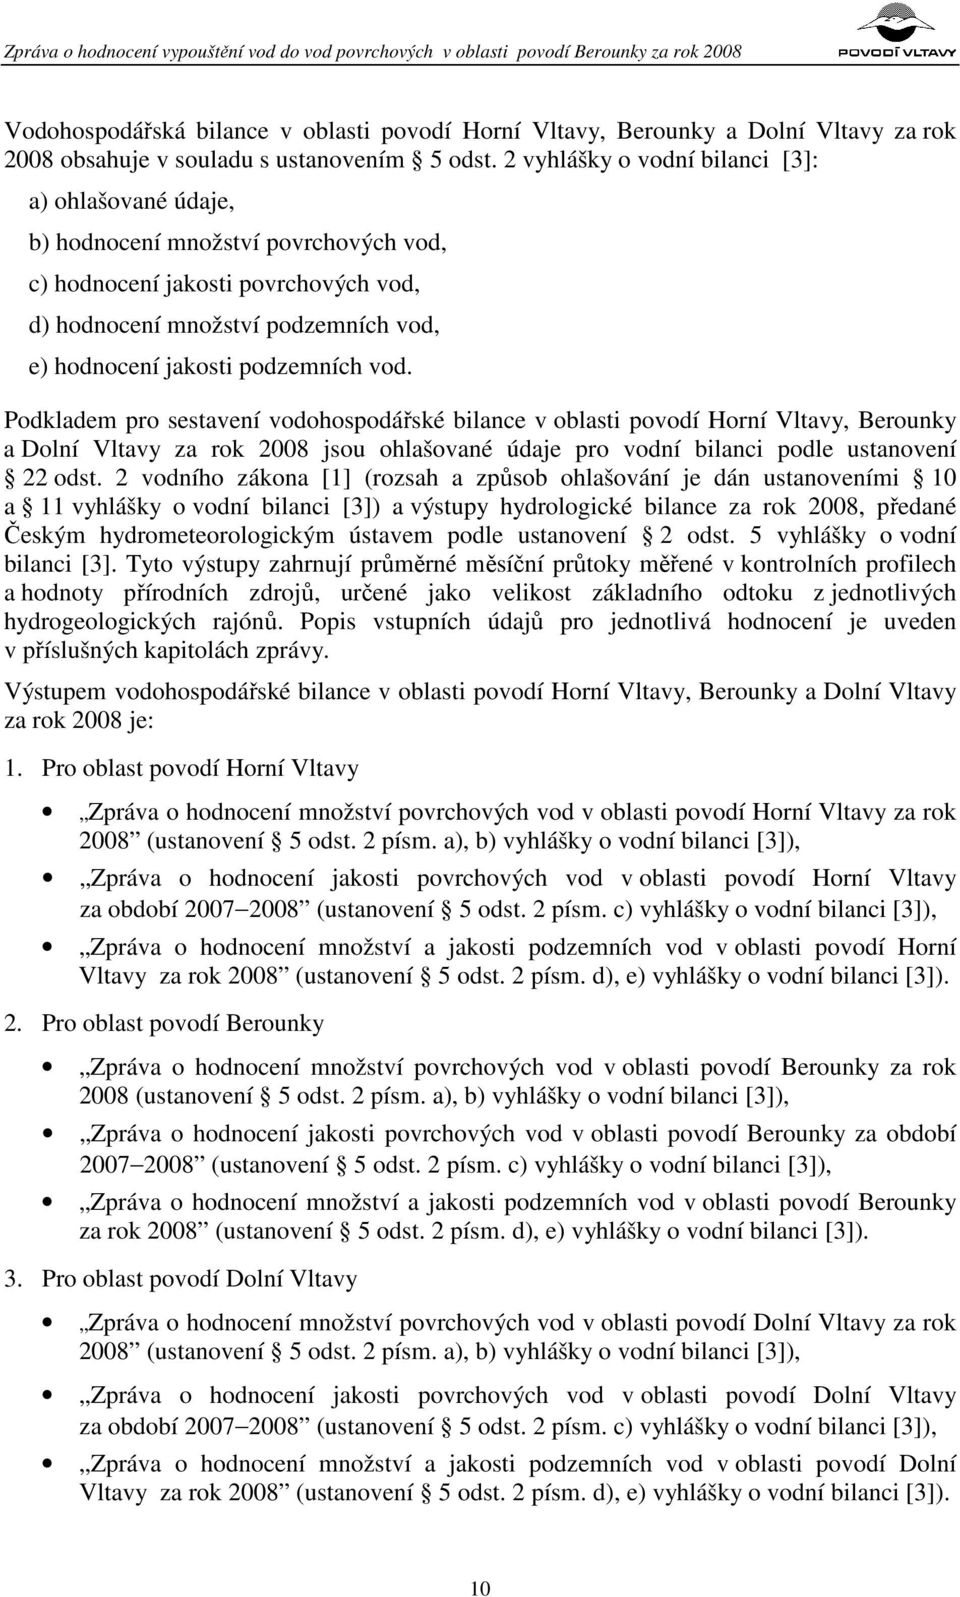 vod. Podkladem pro sestavení vodohospodářské bilance v oblasti povodí Horní Vltavy, Berounky a Dolní Vltavy za rok 2008 jsou ohlašované údaje pro vodní bilanci podle ustanovení 22 odst.